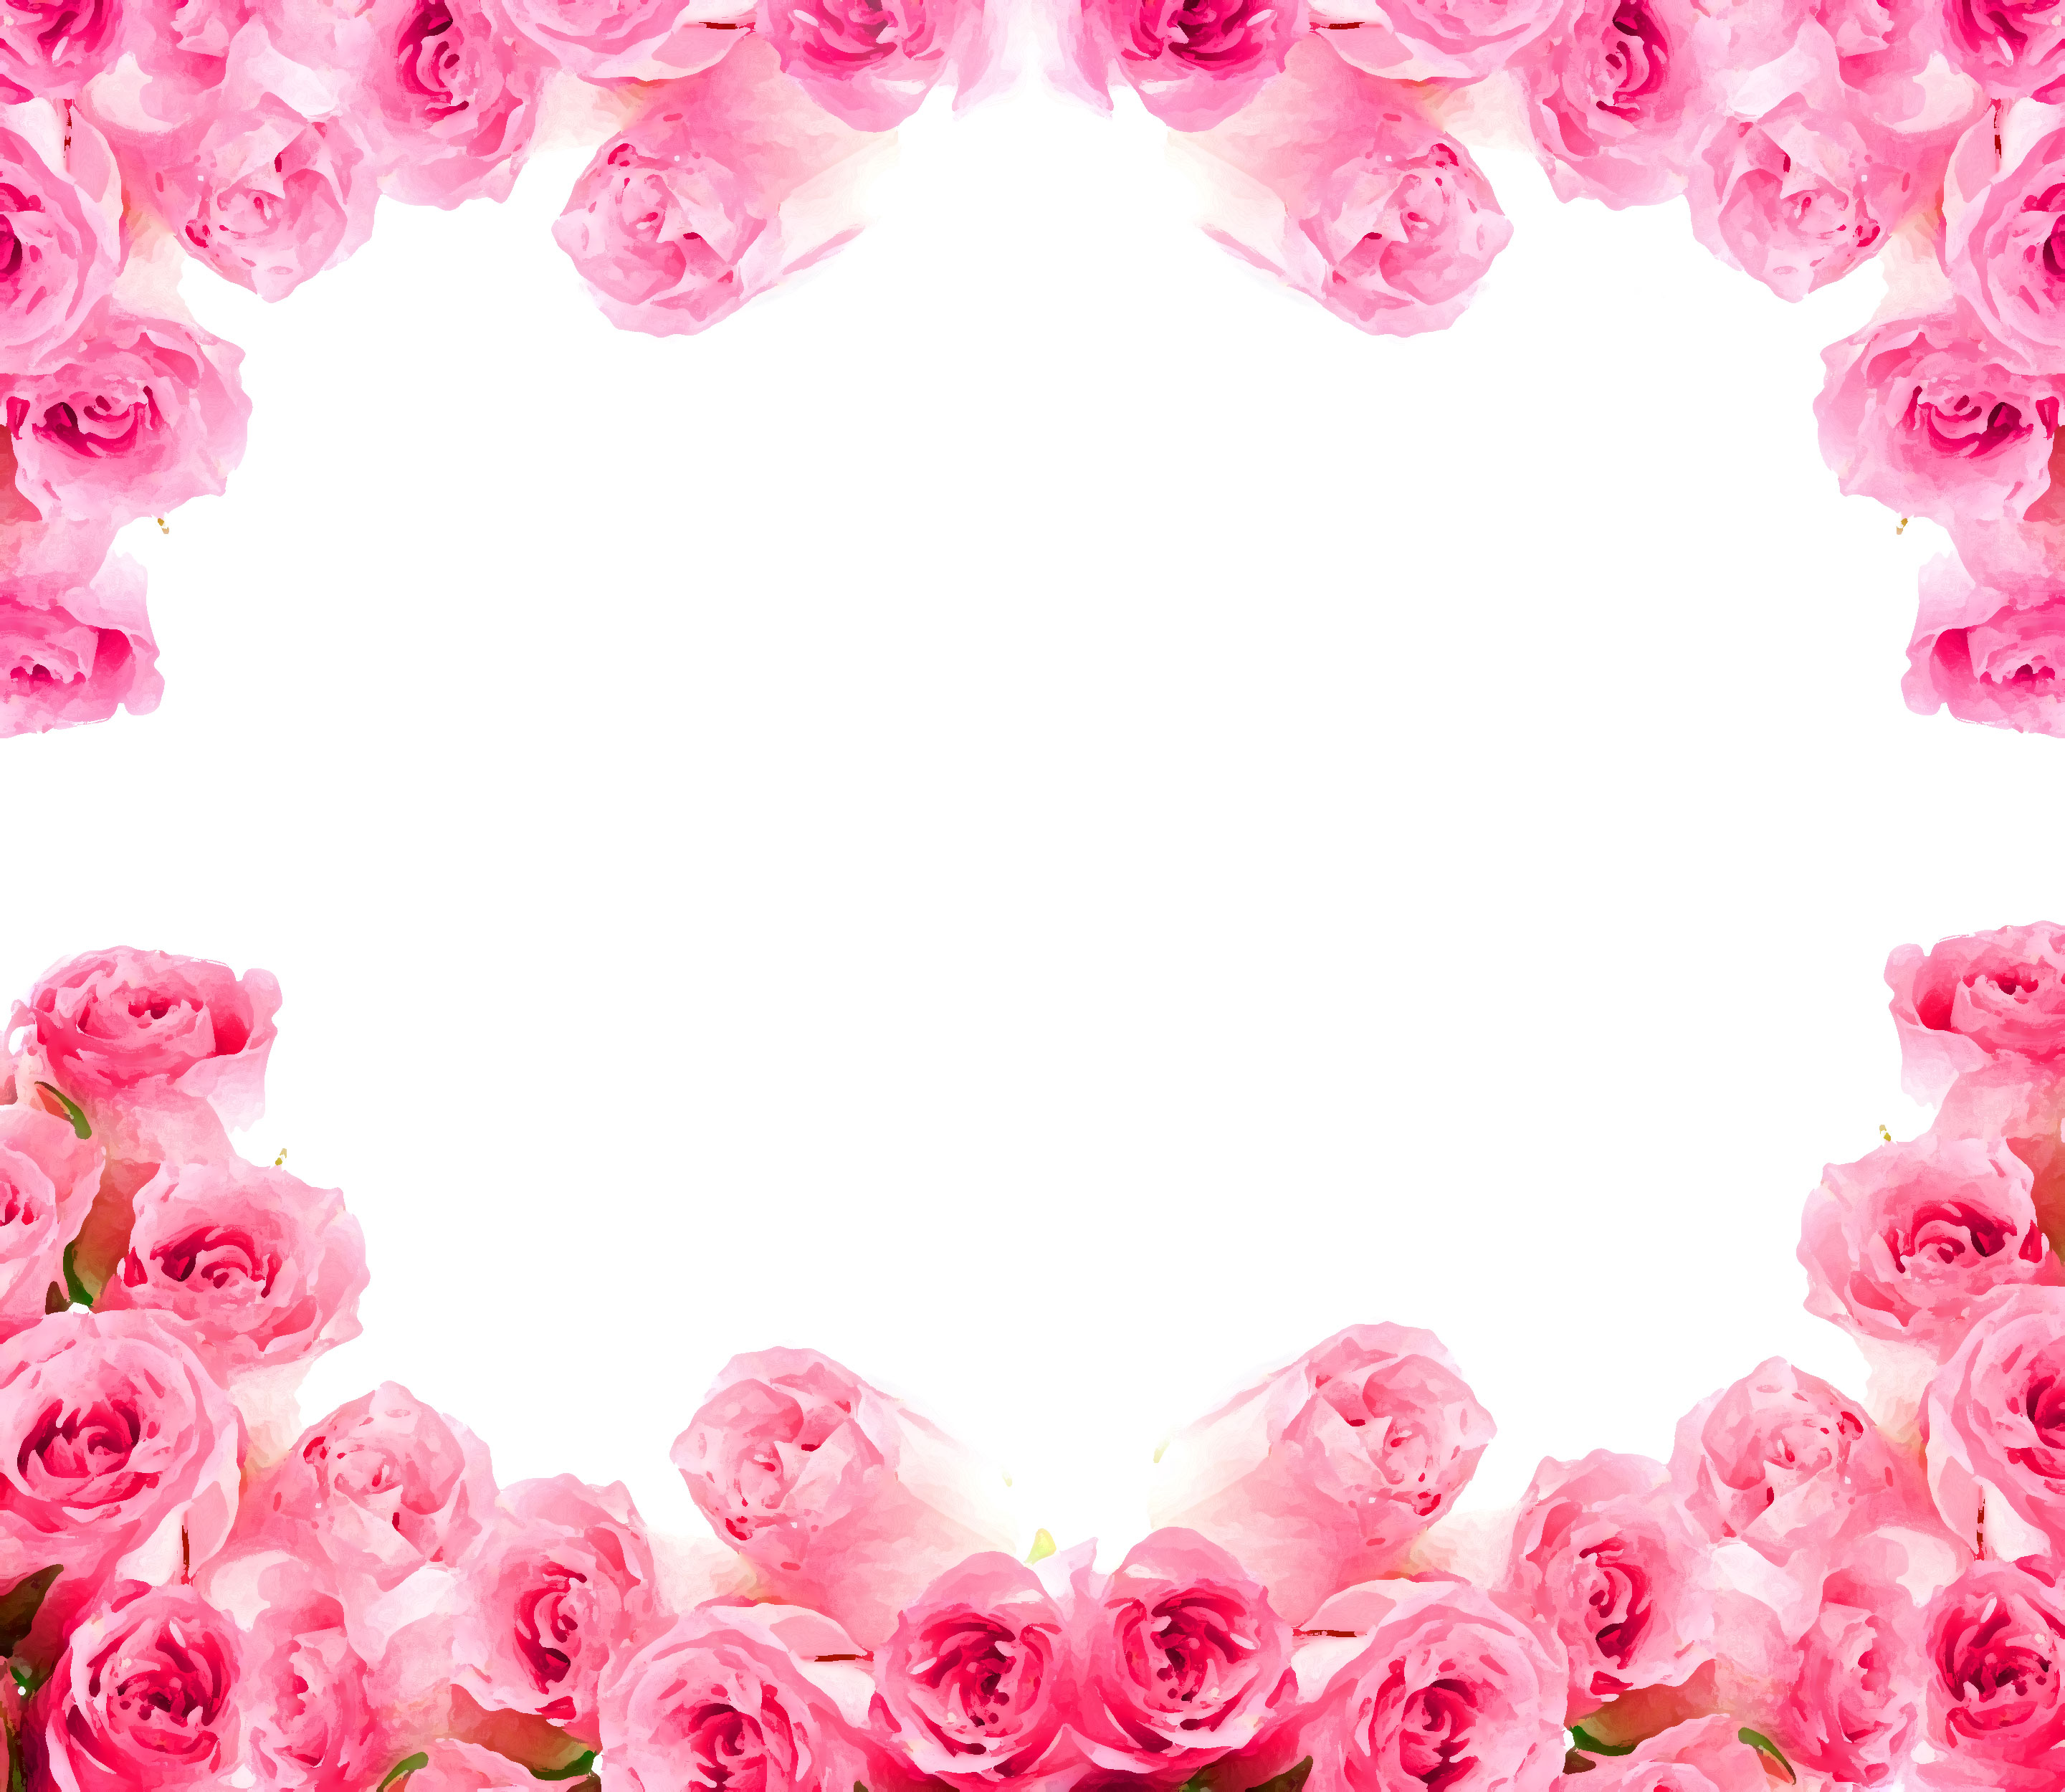 壁紙 背景イラスト 花のフレーム 外枠 No 158 花囲い ピンク バラ